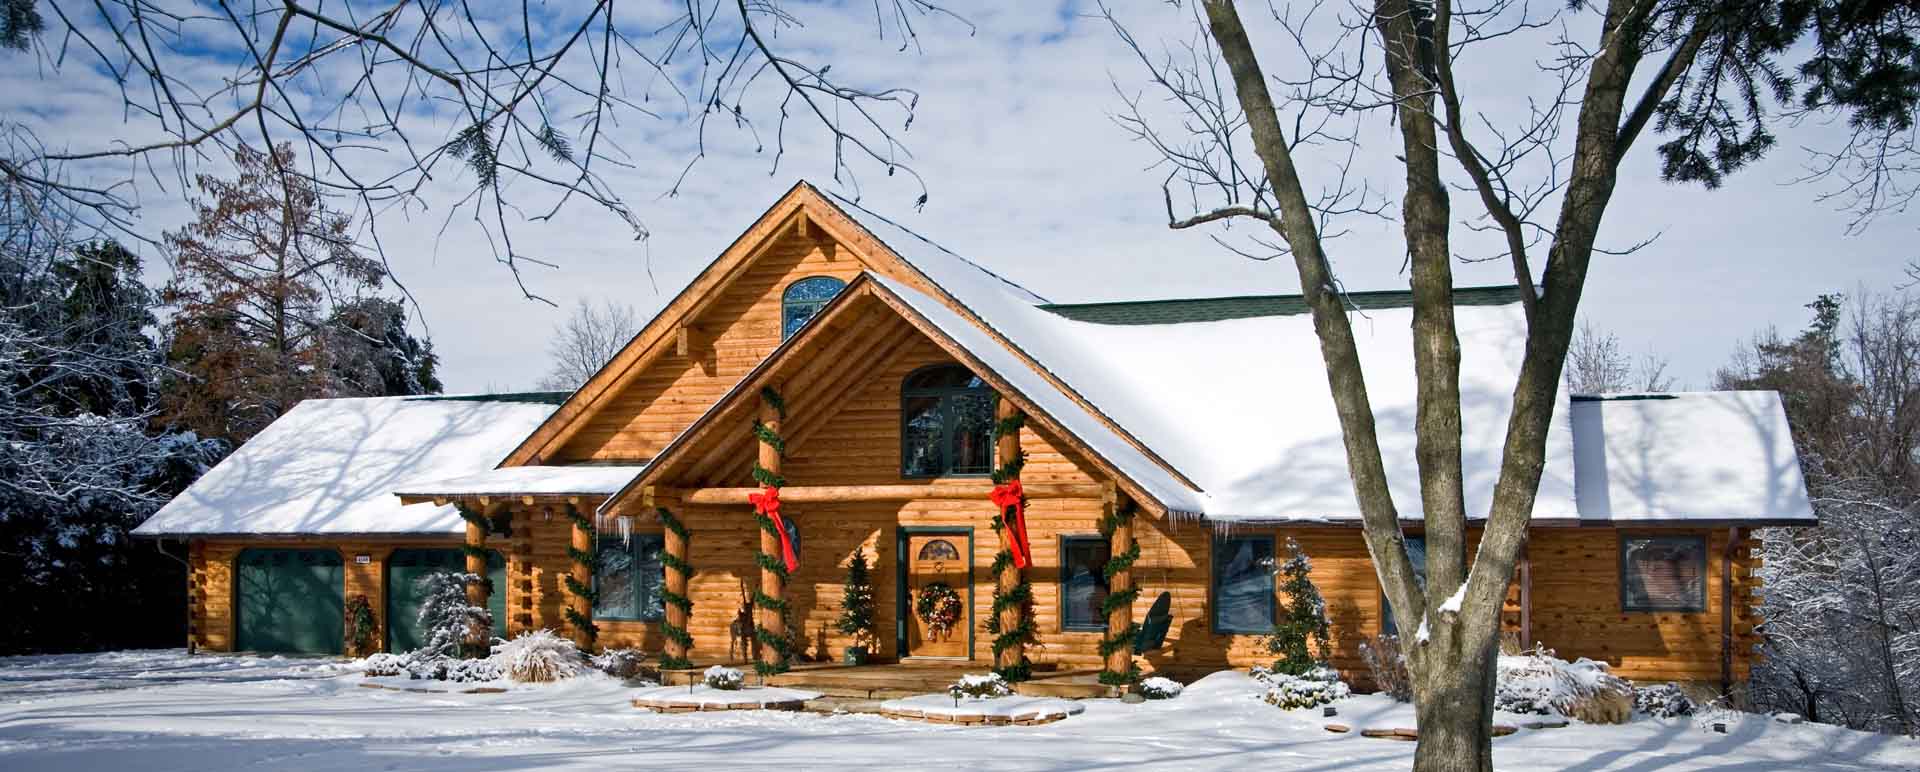 A Log Home Designed for the Holidays